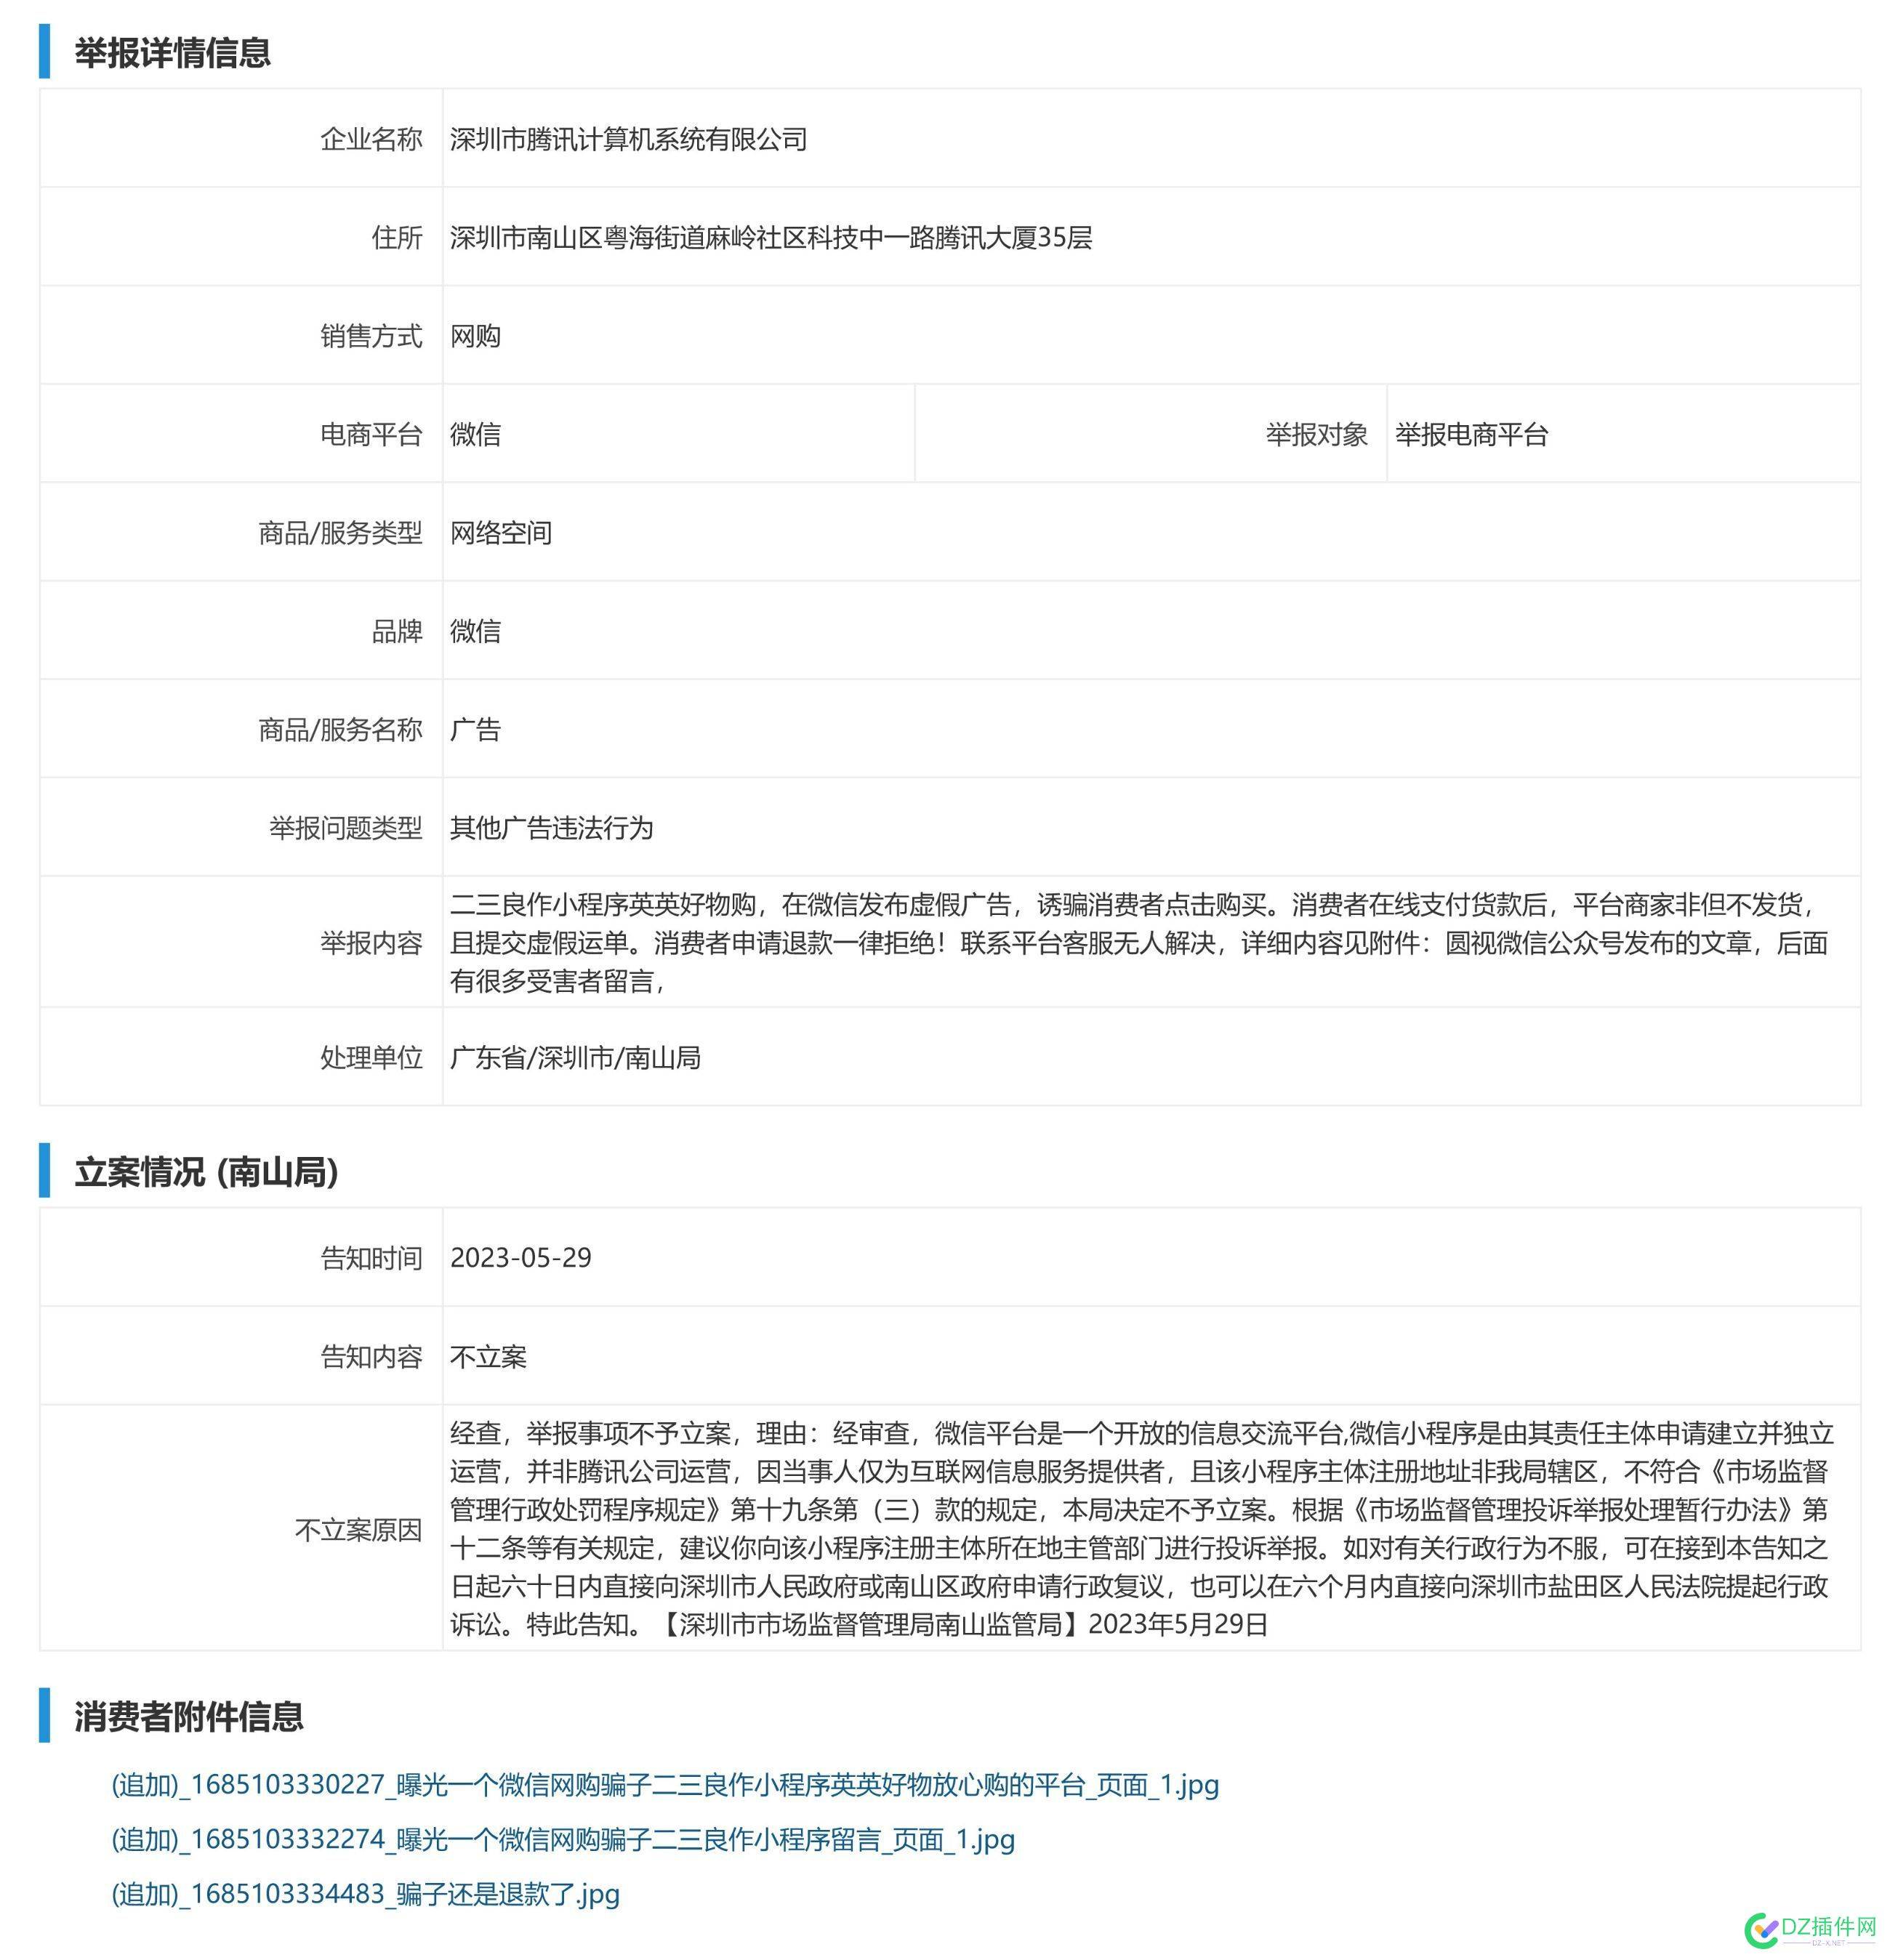 12315举报深圳市腾讯公司在微信平台发布虚假广告却不予立案 12315,举报,深圳,深圳市,腾讯